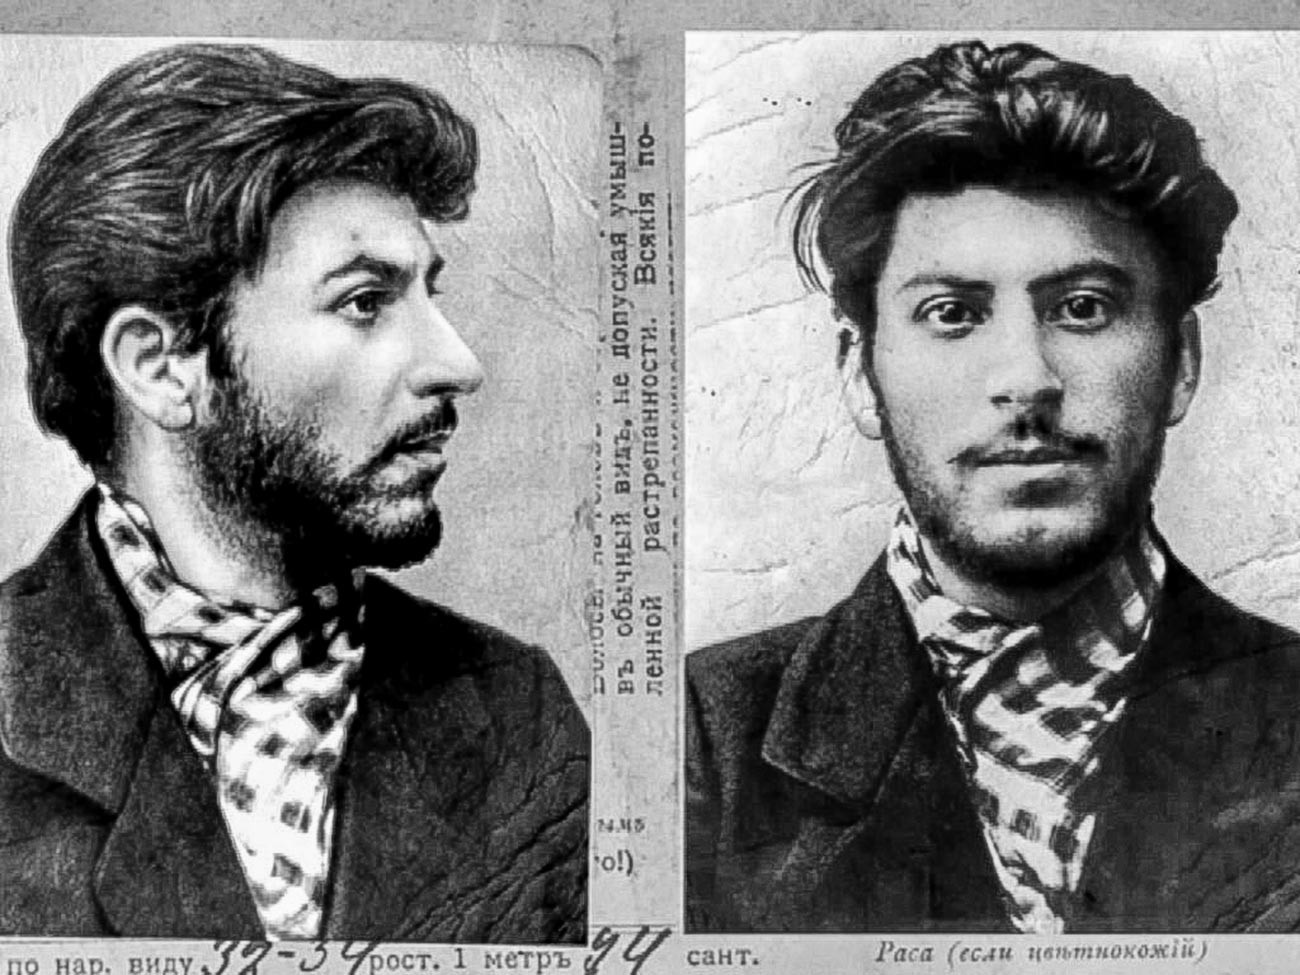 Photographies prises par la police. Staline avait alors 23 ans.